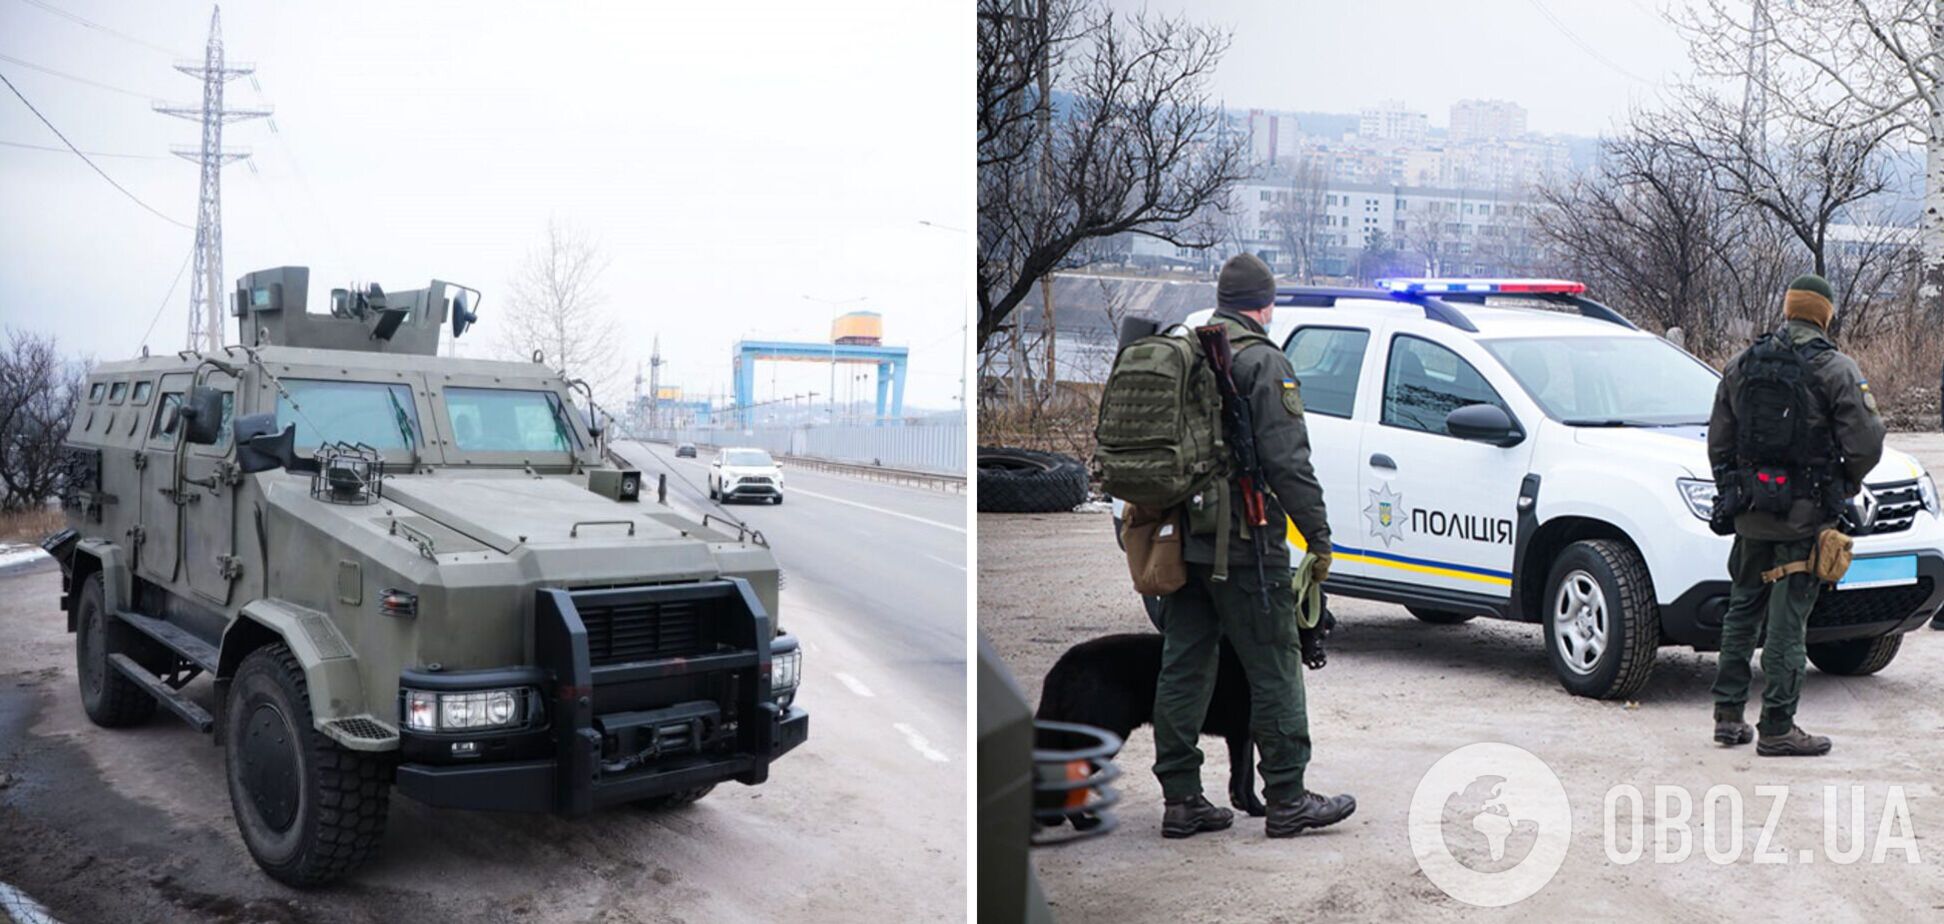 Нацгвардейцы взяли под усиленную охрану Киевскую ГЭС. Фото